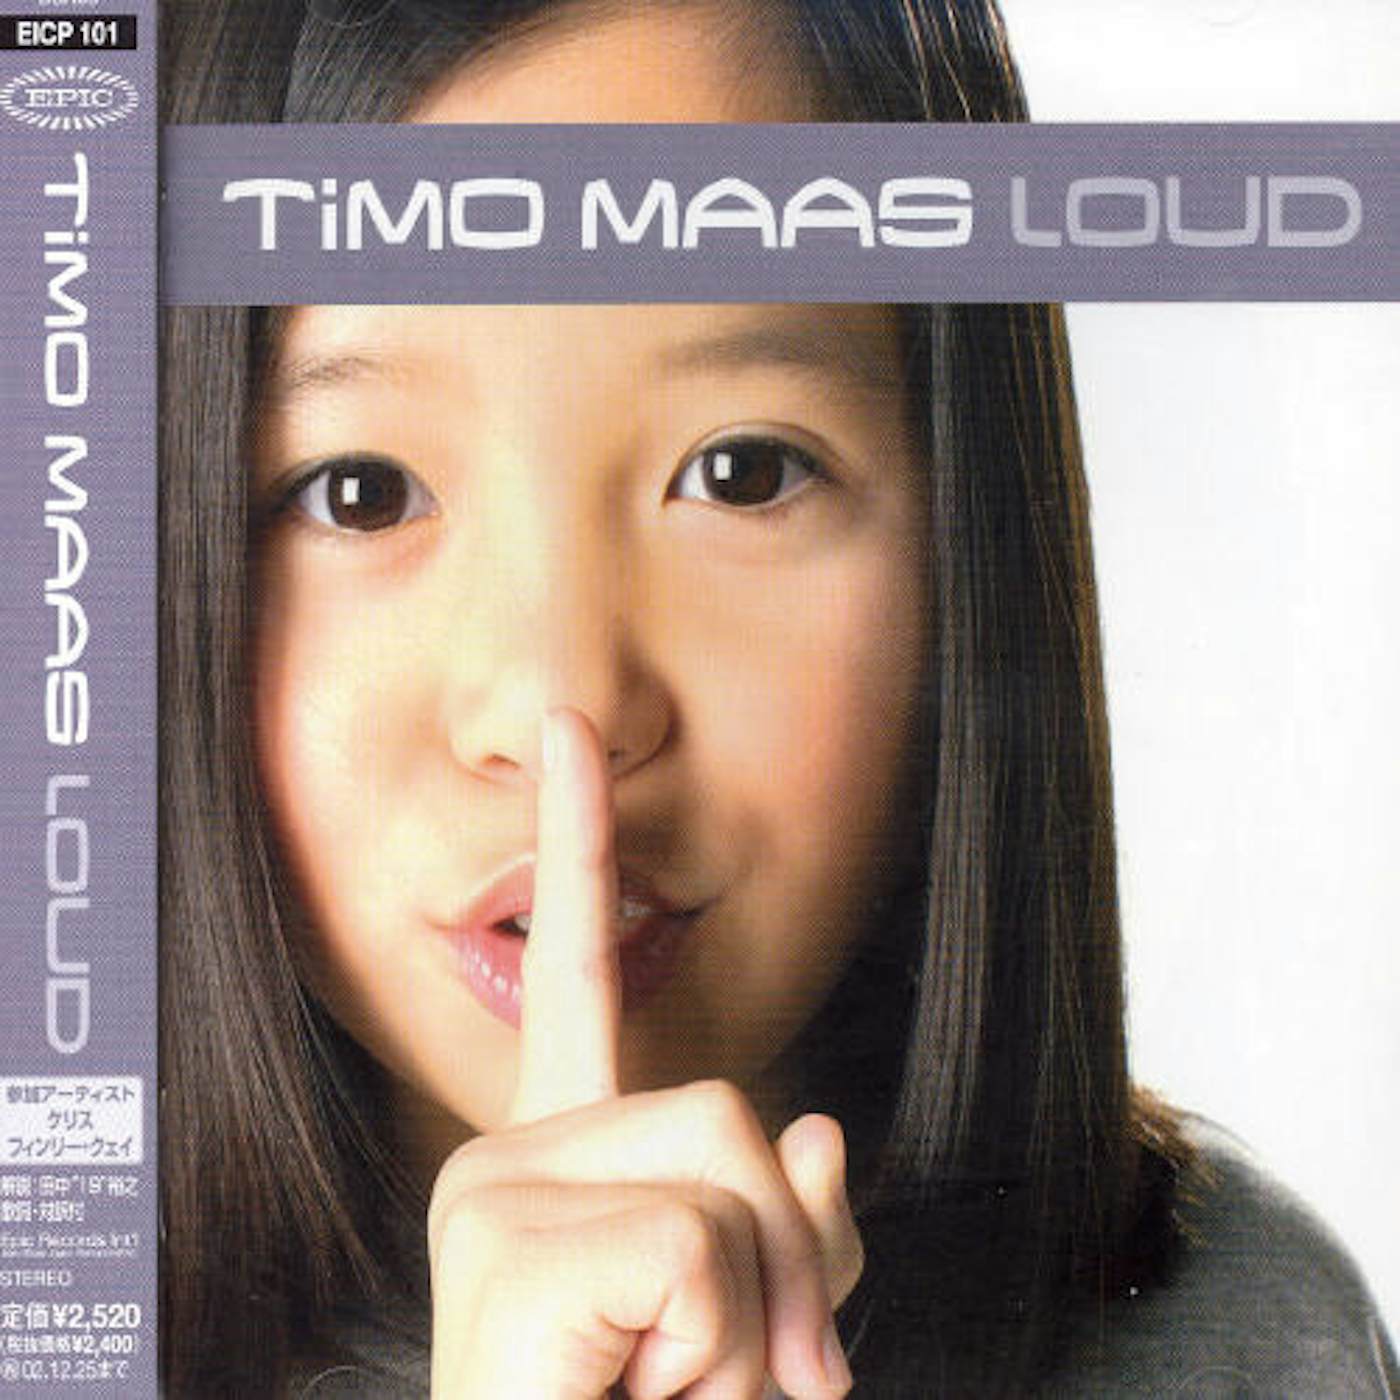 Timo Maas LOUD CD